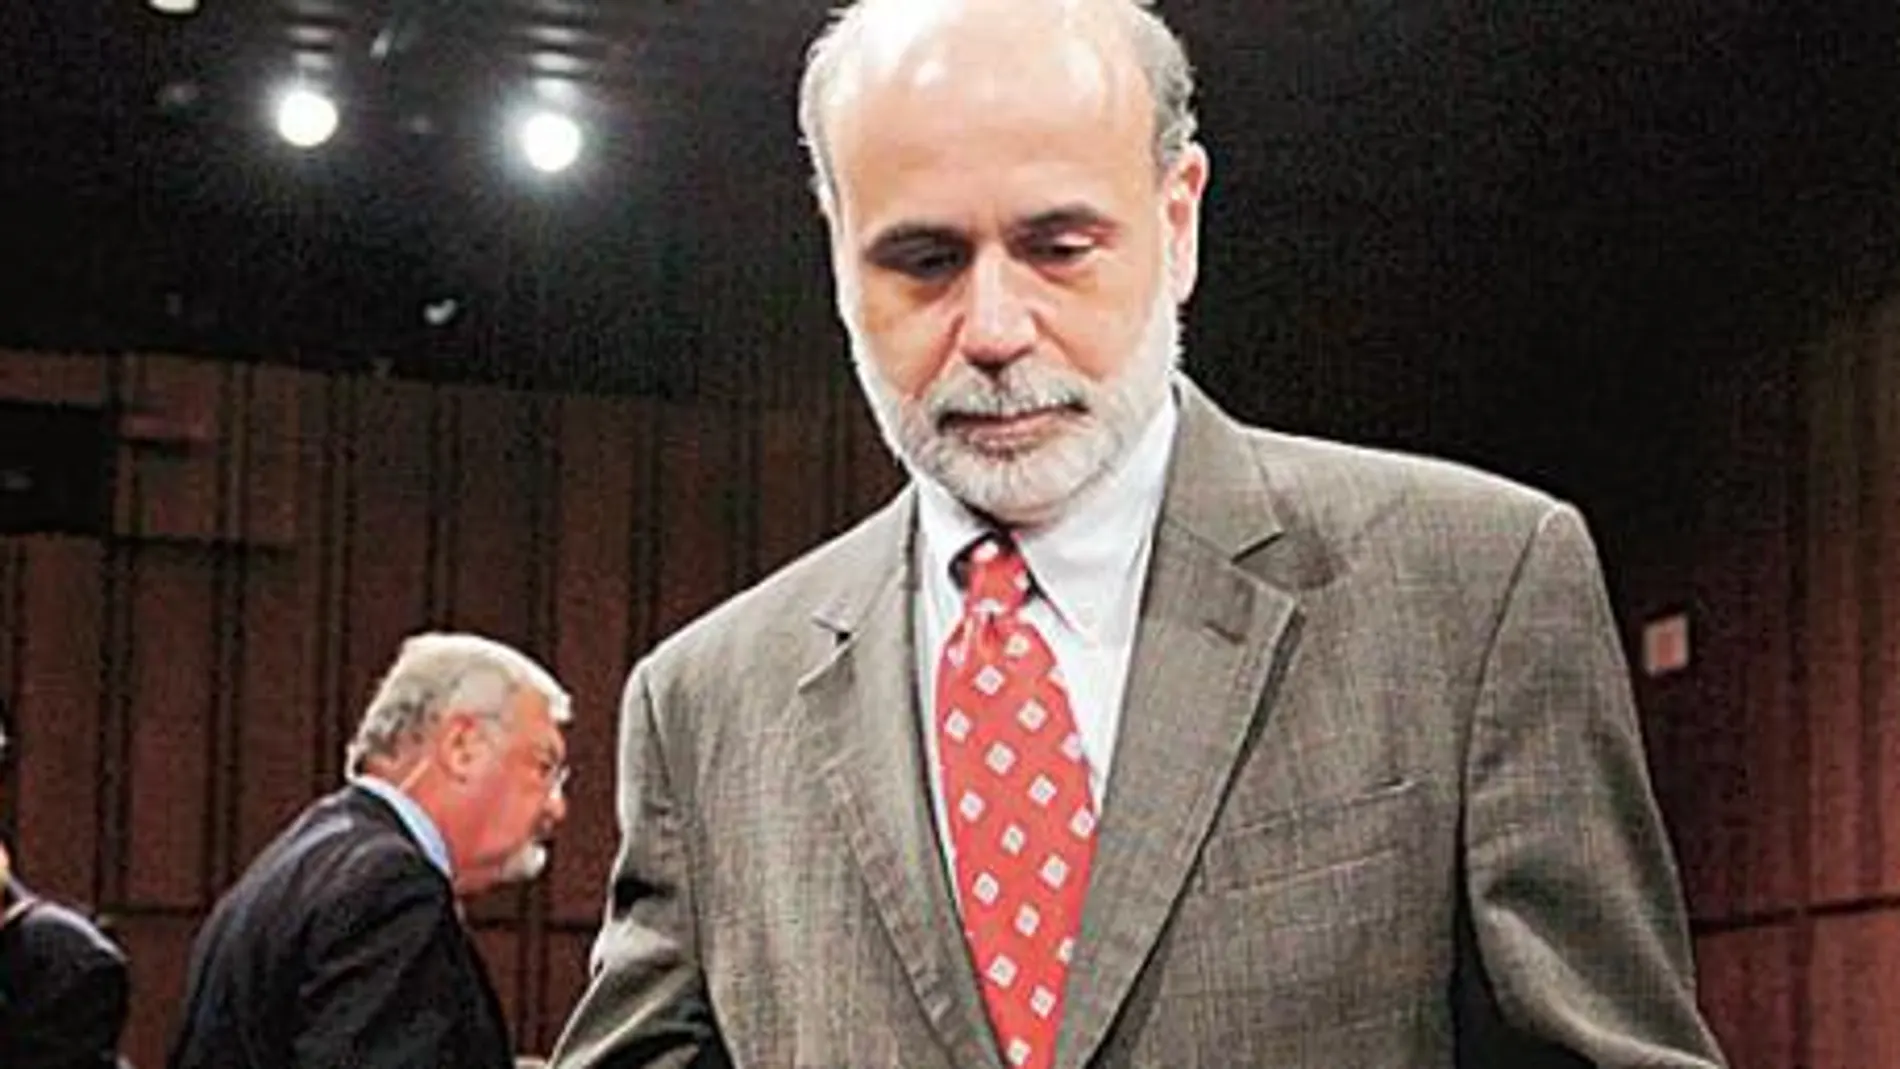 Bernanke dice que la economía empezará a crecer a final de año